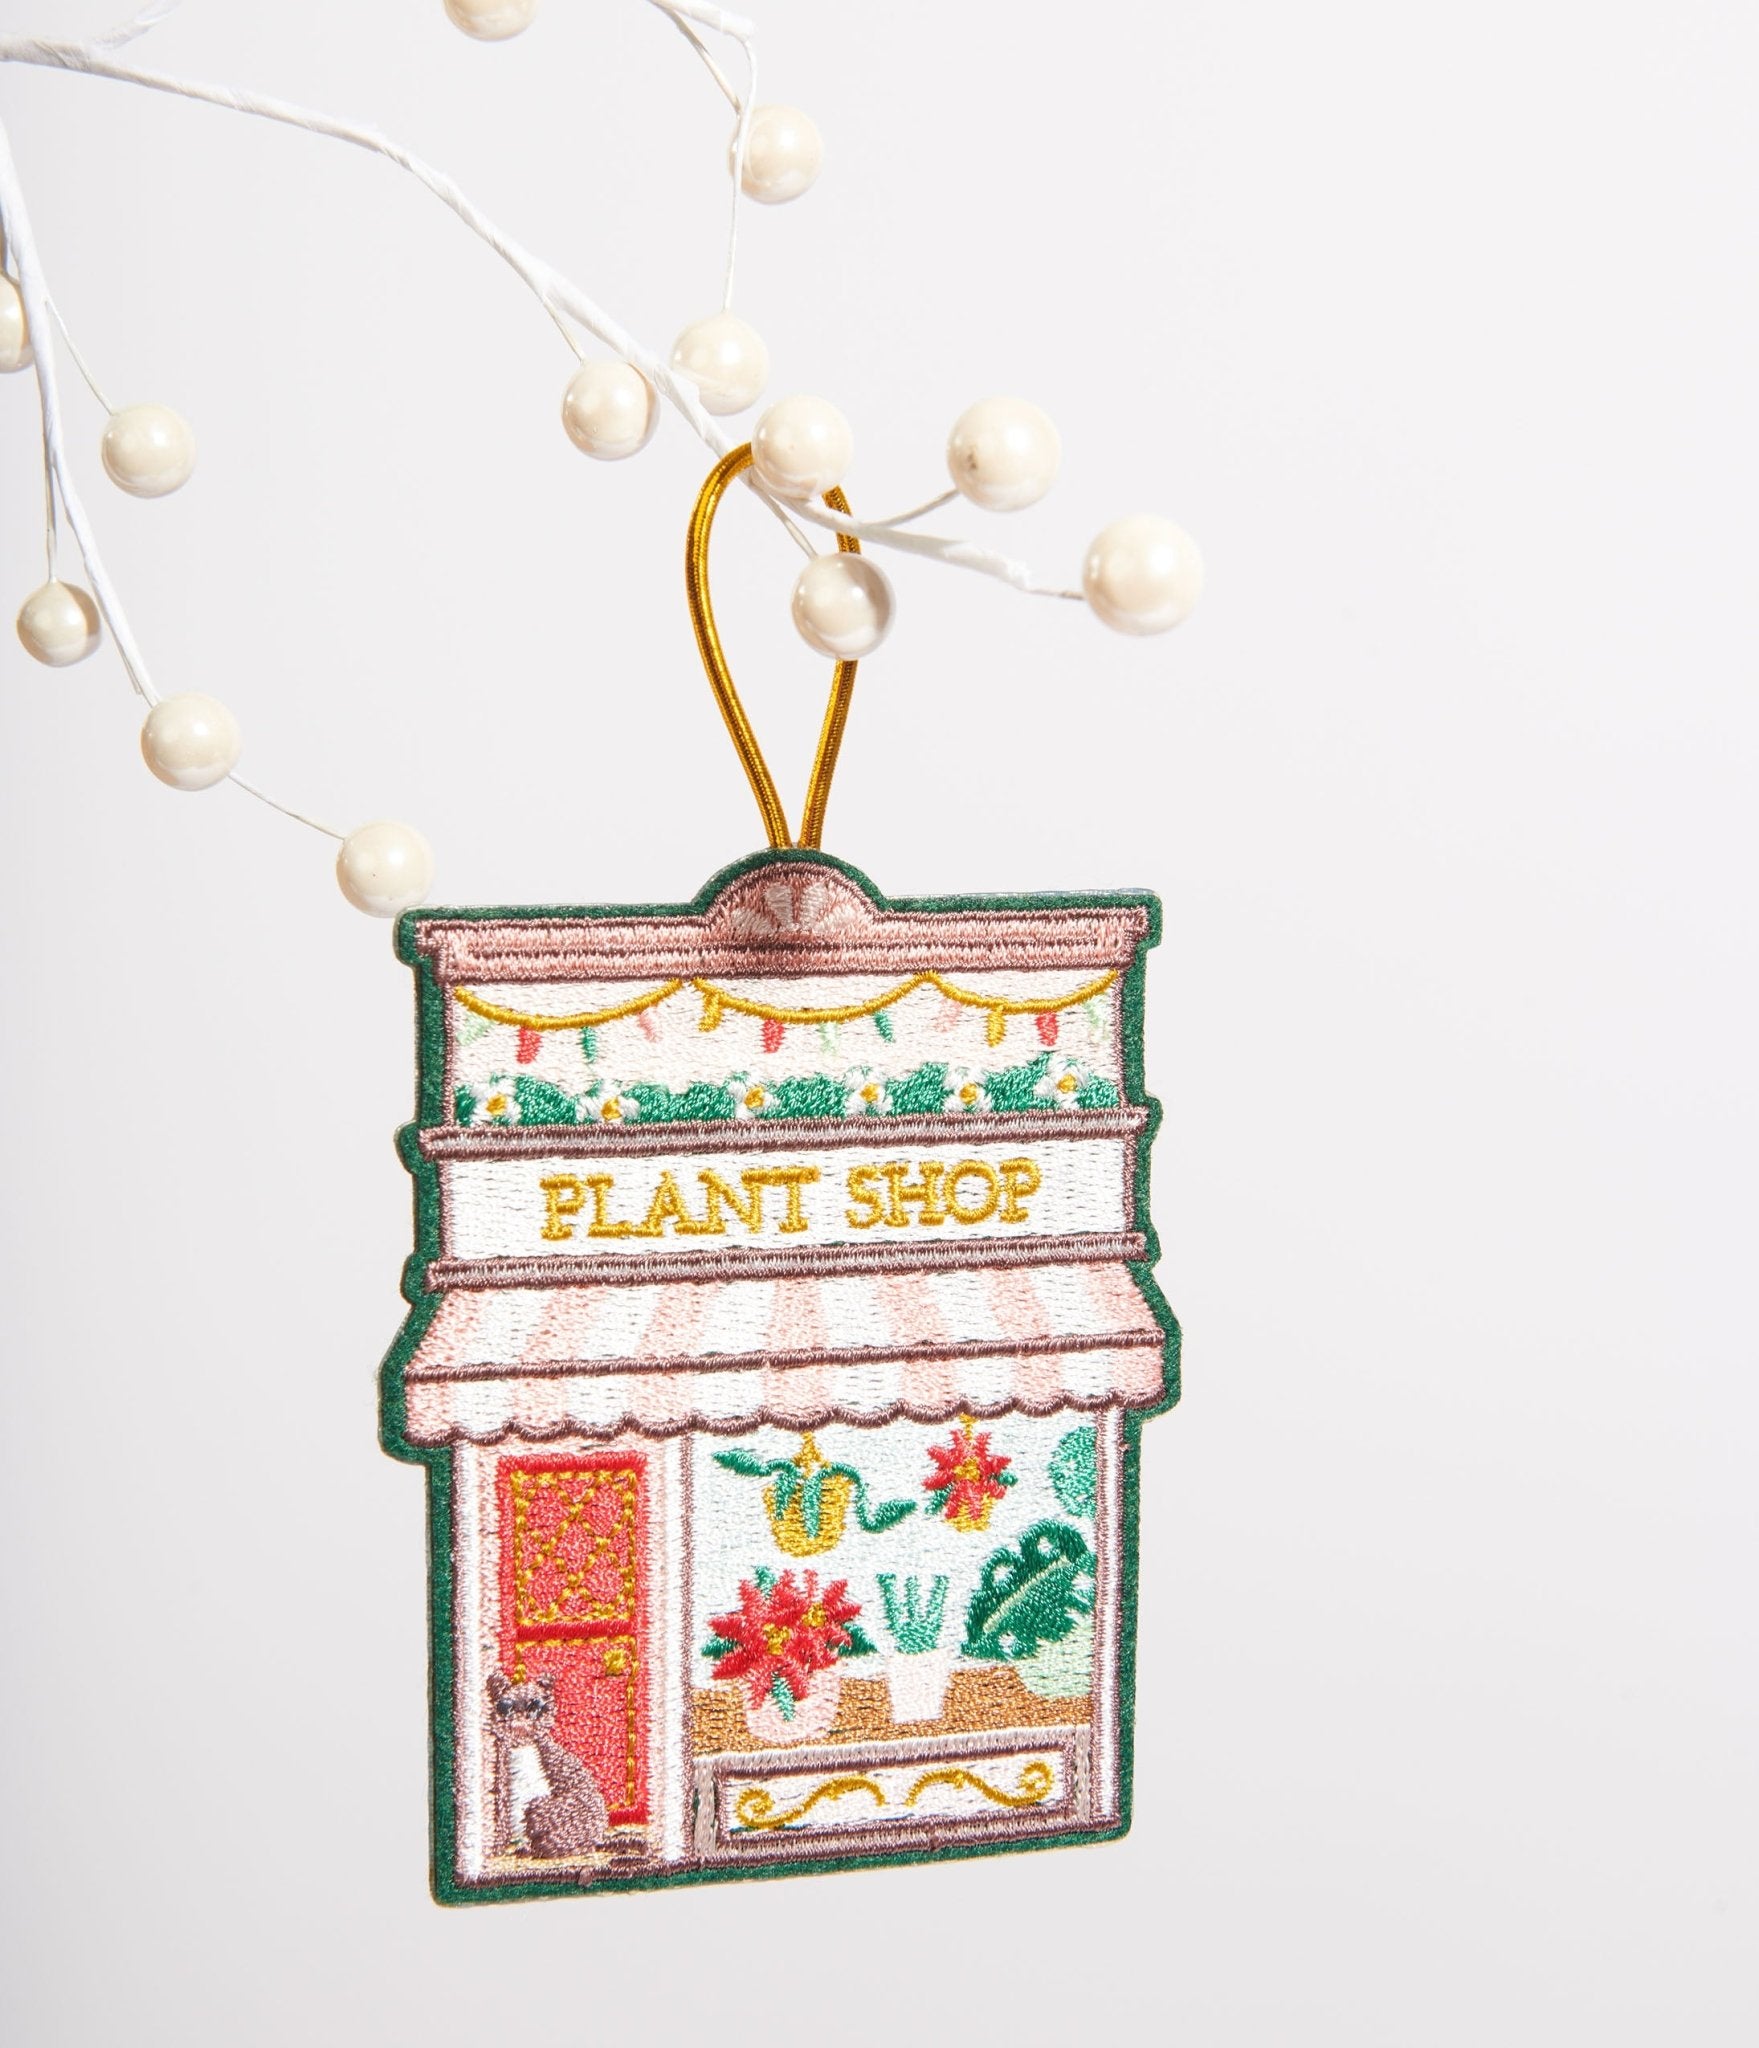 

Plant Shop Felt Ornament